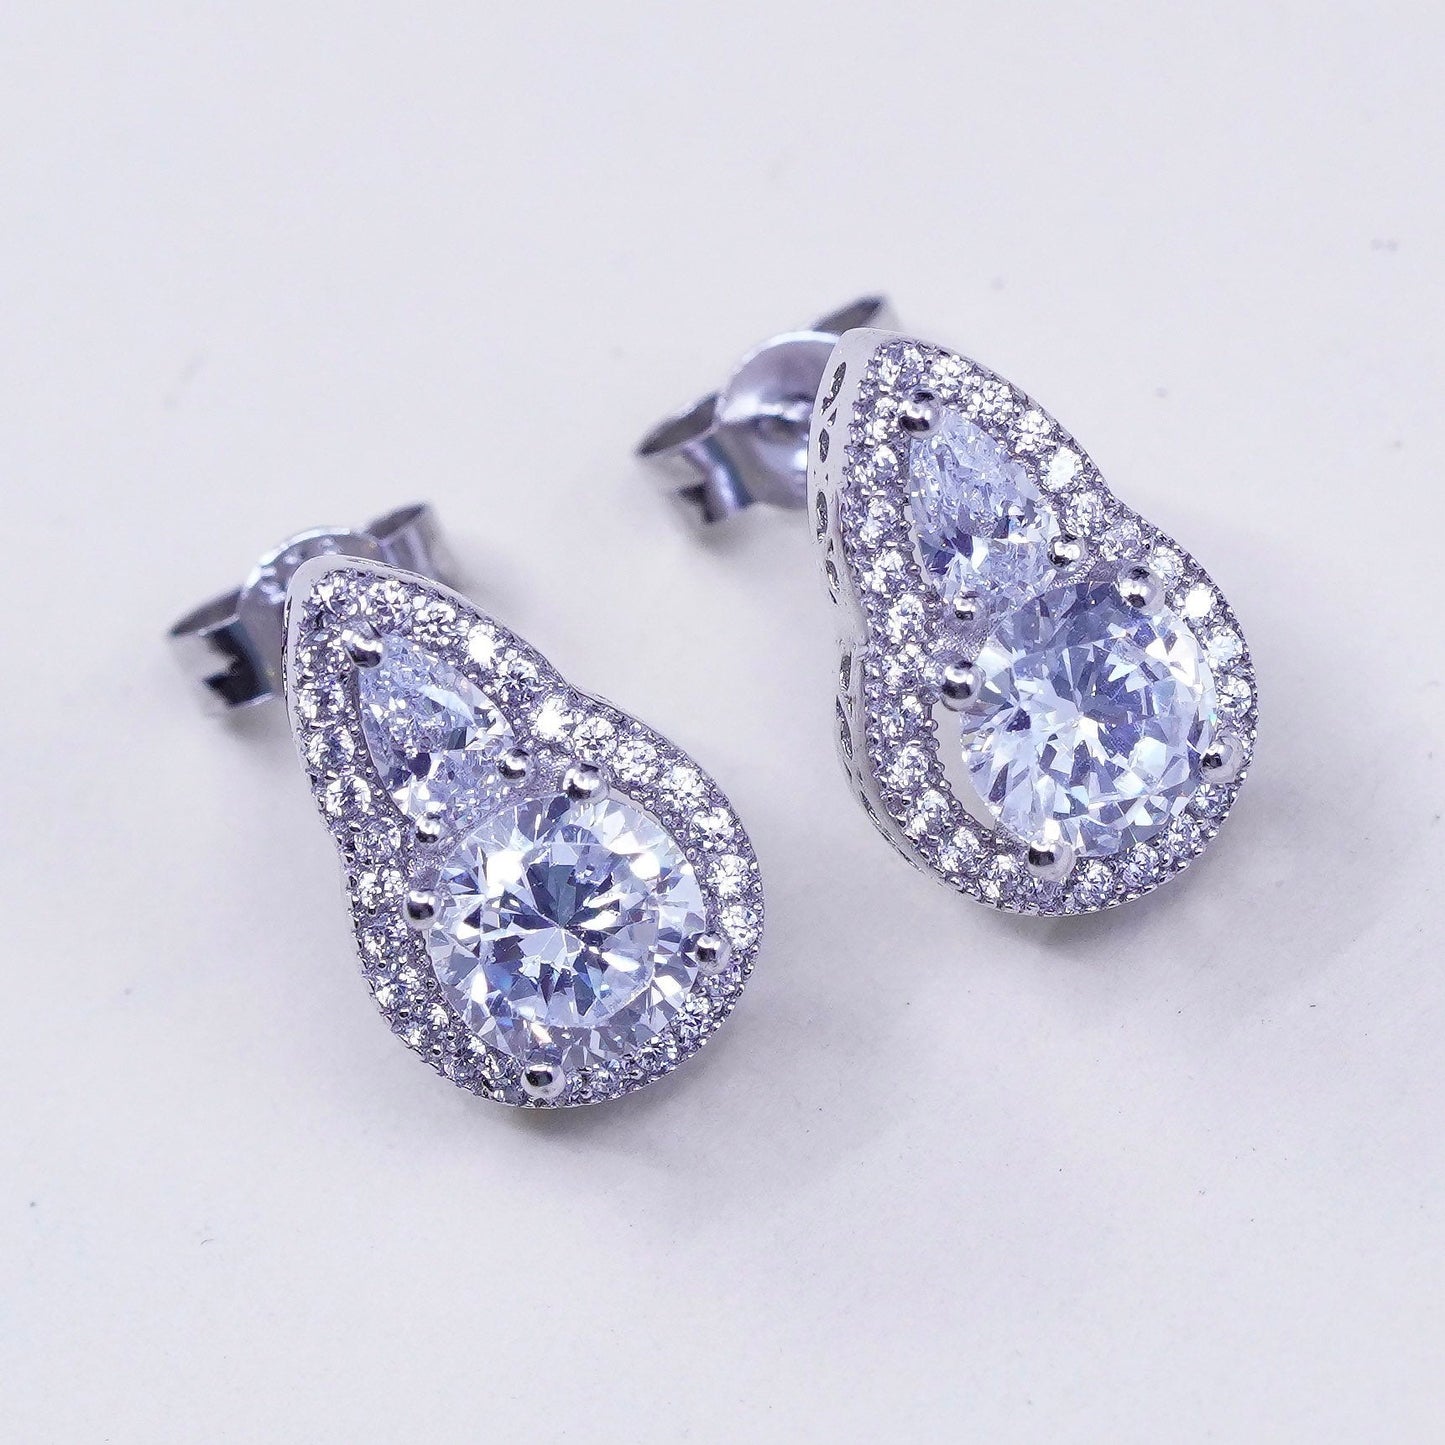 Vintage sterling silver genuine cz teardrop studs, fashion minimalist earrings